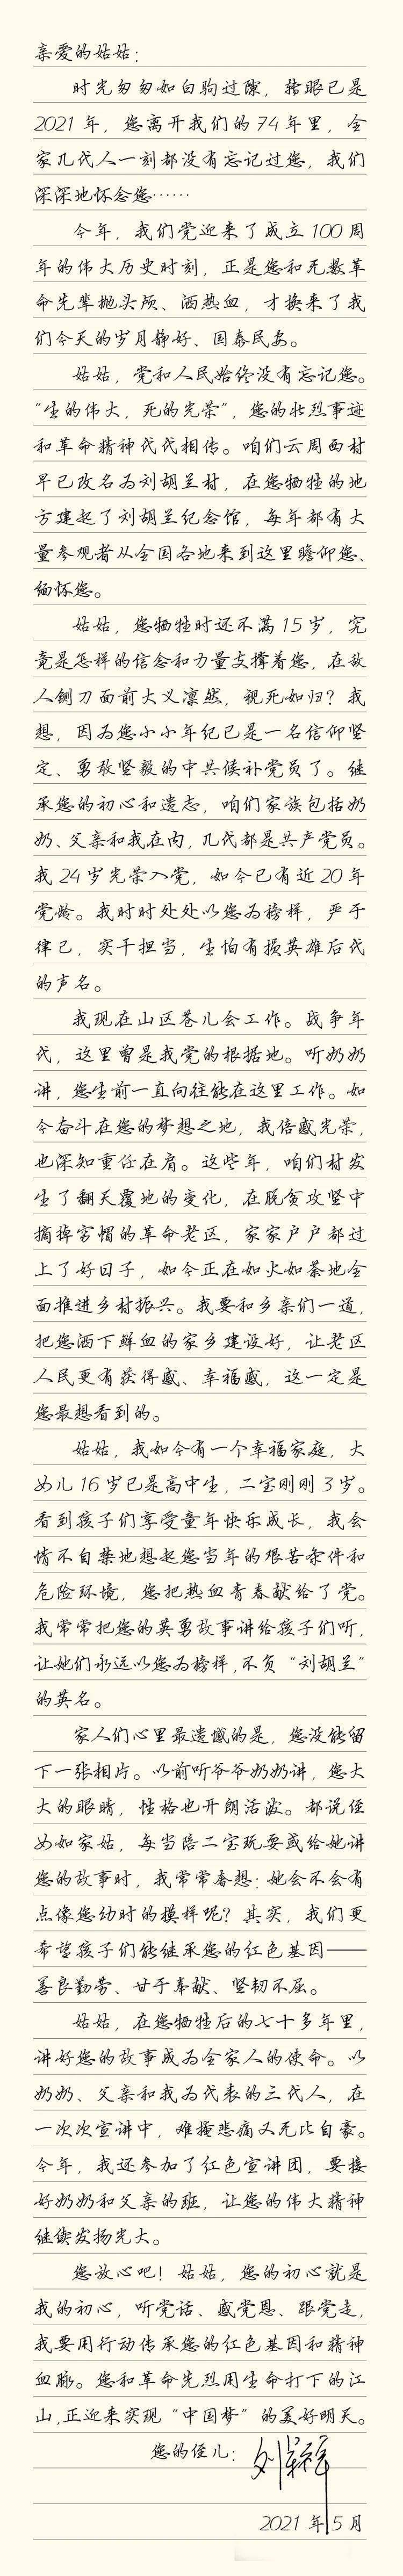 【巾帼学党史】写给刘胡兰的告慰家书〡姑姑:您"生的伟大死的光荣","